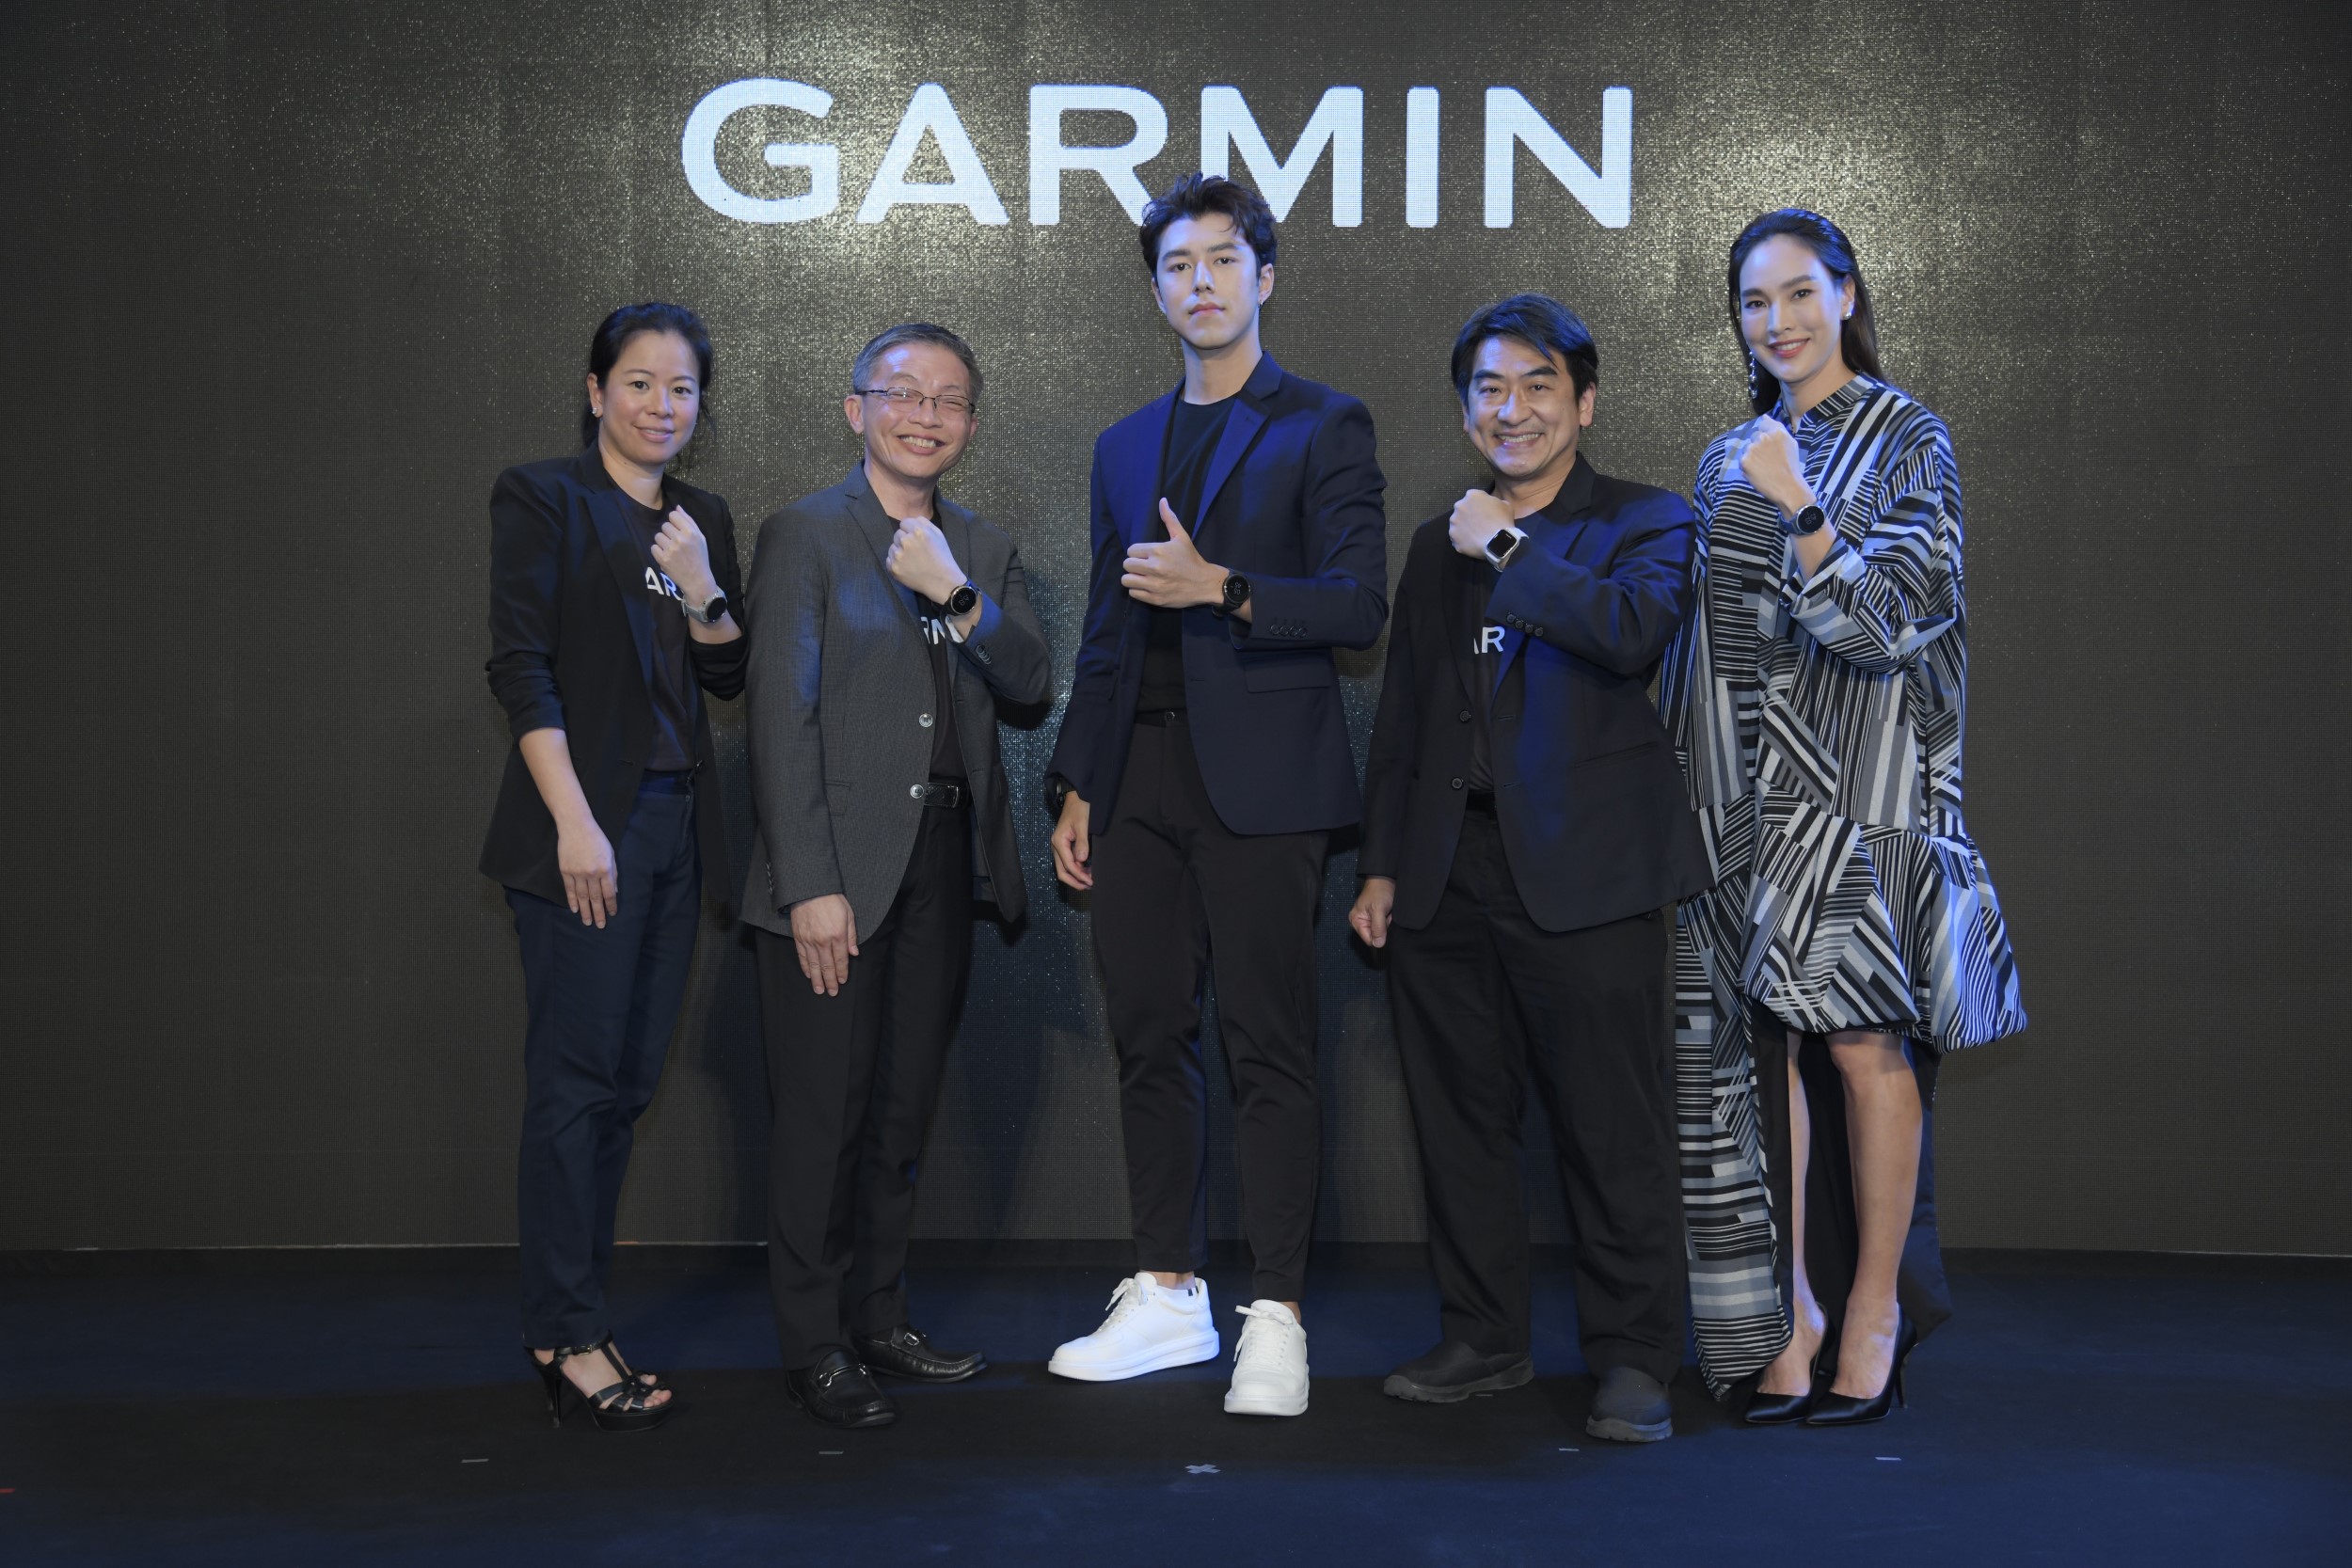 GARMIN เปิดตัว นาย-ณภัทร ไลฟ์สไตล์พรีเซนเตอร์คนแรกของประเทศไทย